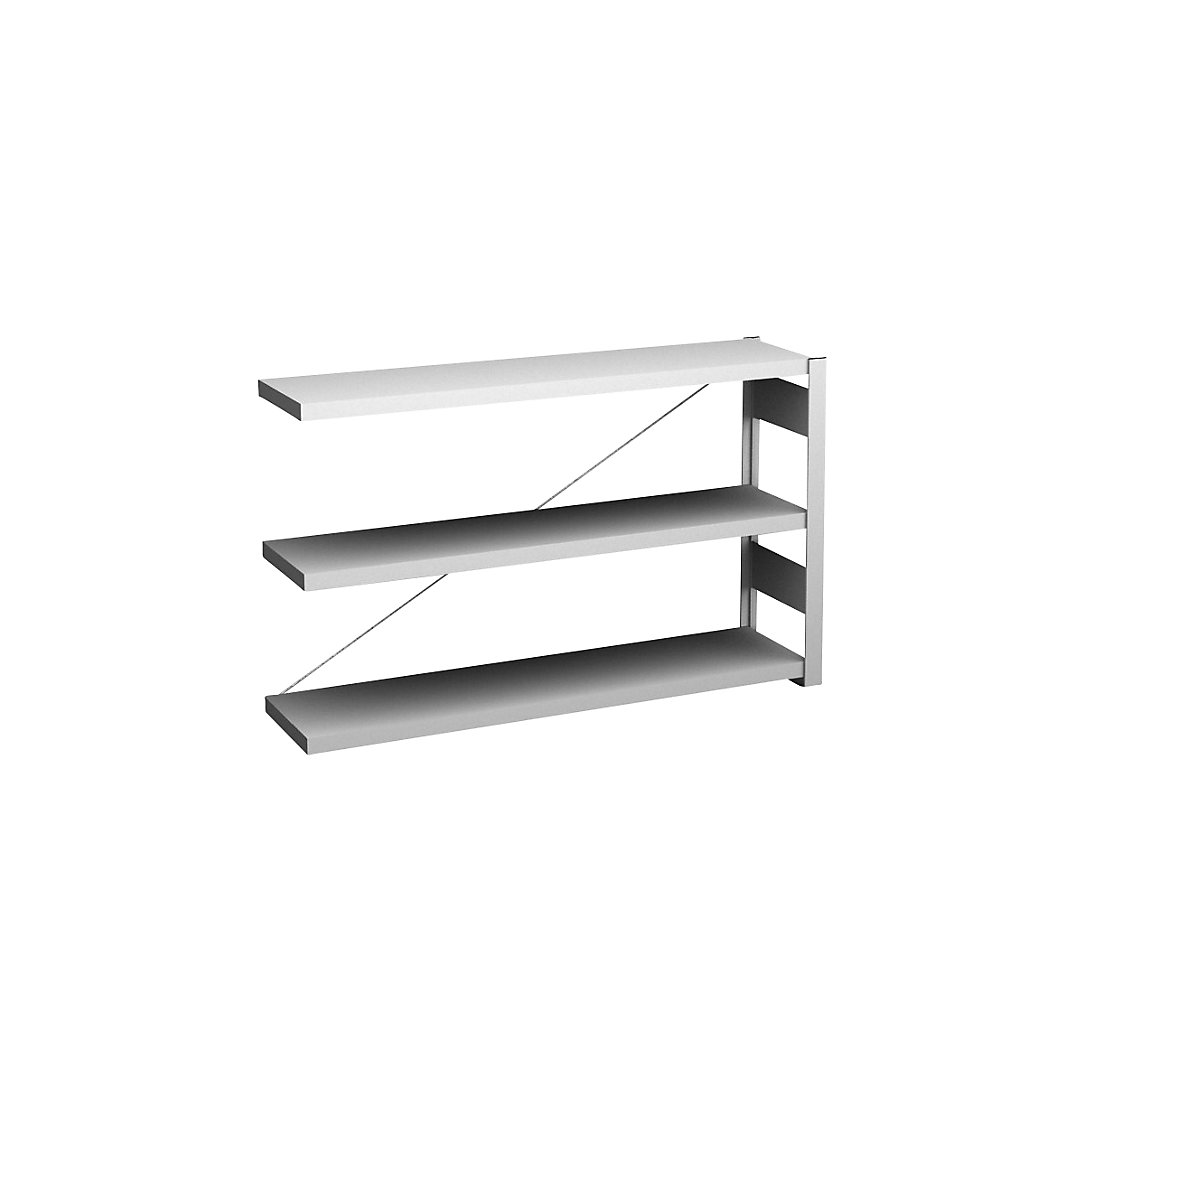 Sideboard shelving unit, light grey – hofe, height 825 mm, 3 shelves, extension shelf unit, shelf depth 300 mm, max. shelf load 175 kg-5